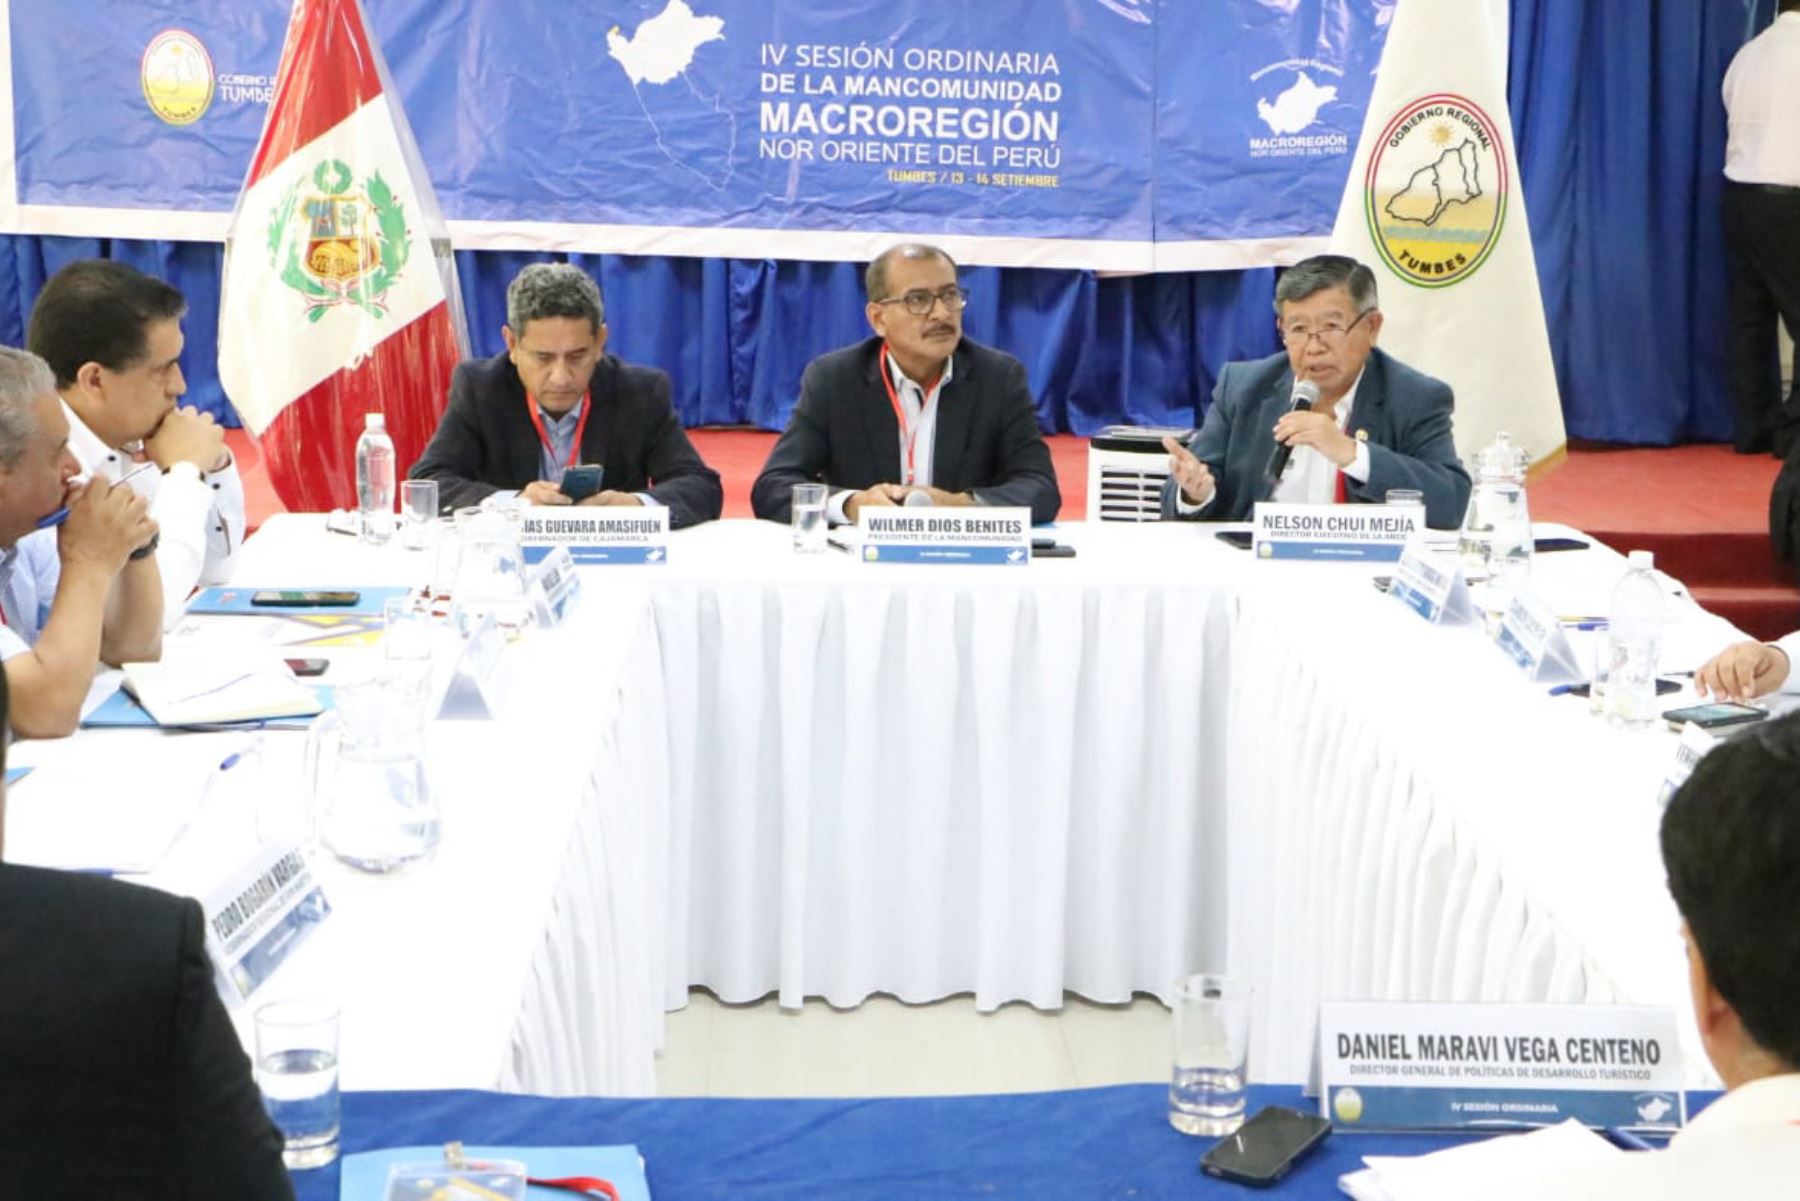 Director ejecutivo de la ARCC, Nelson Chui Mejía, participa en la IV Sesión Ordinaria de la Mancomunidad Macrorregional Nor Oriente del Perú